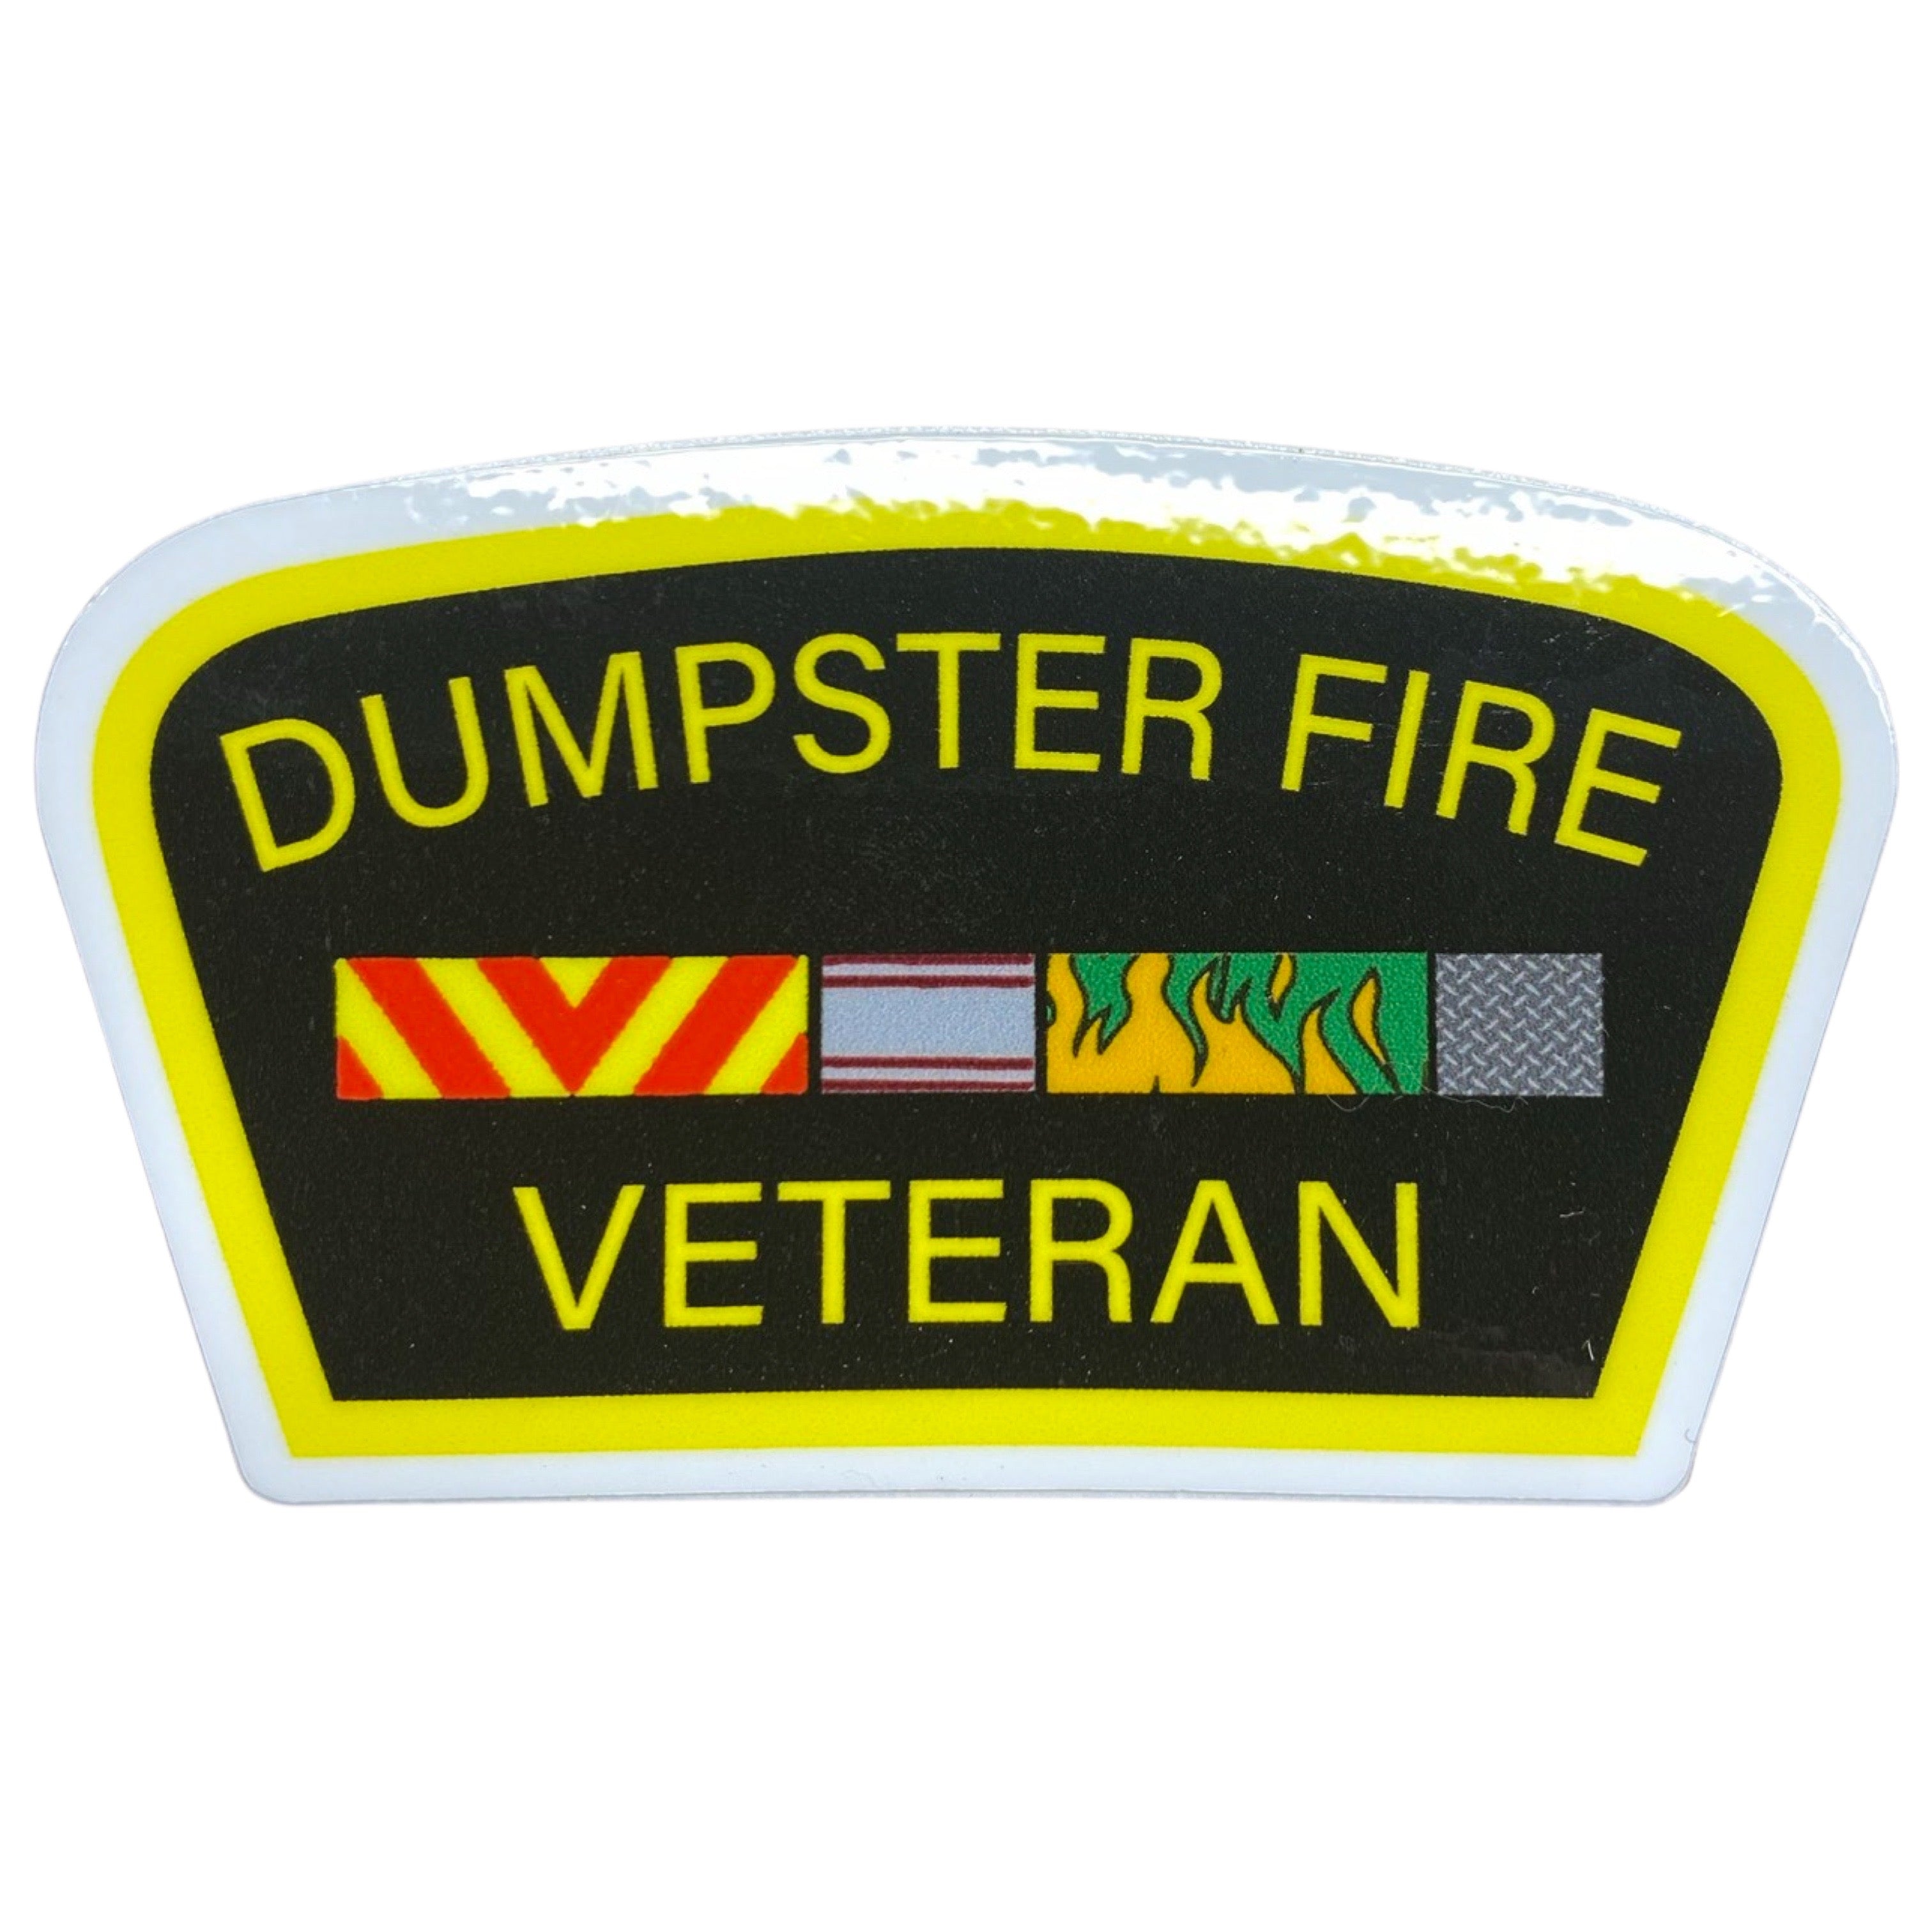 Dumpster Fire Veteran Stickers (3-Pack)